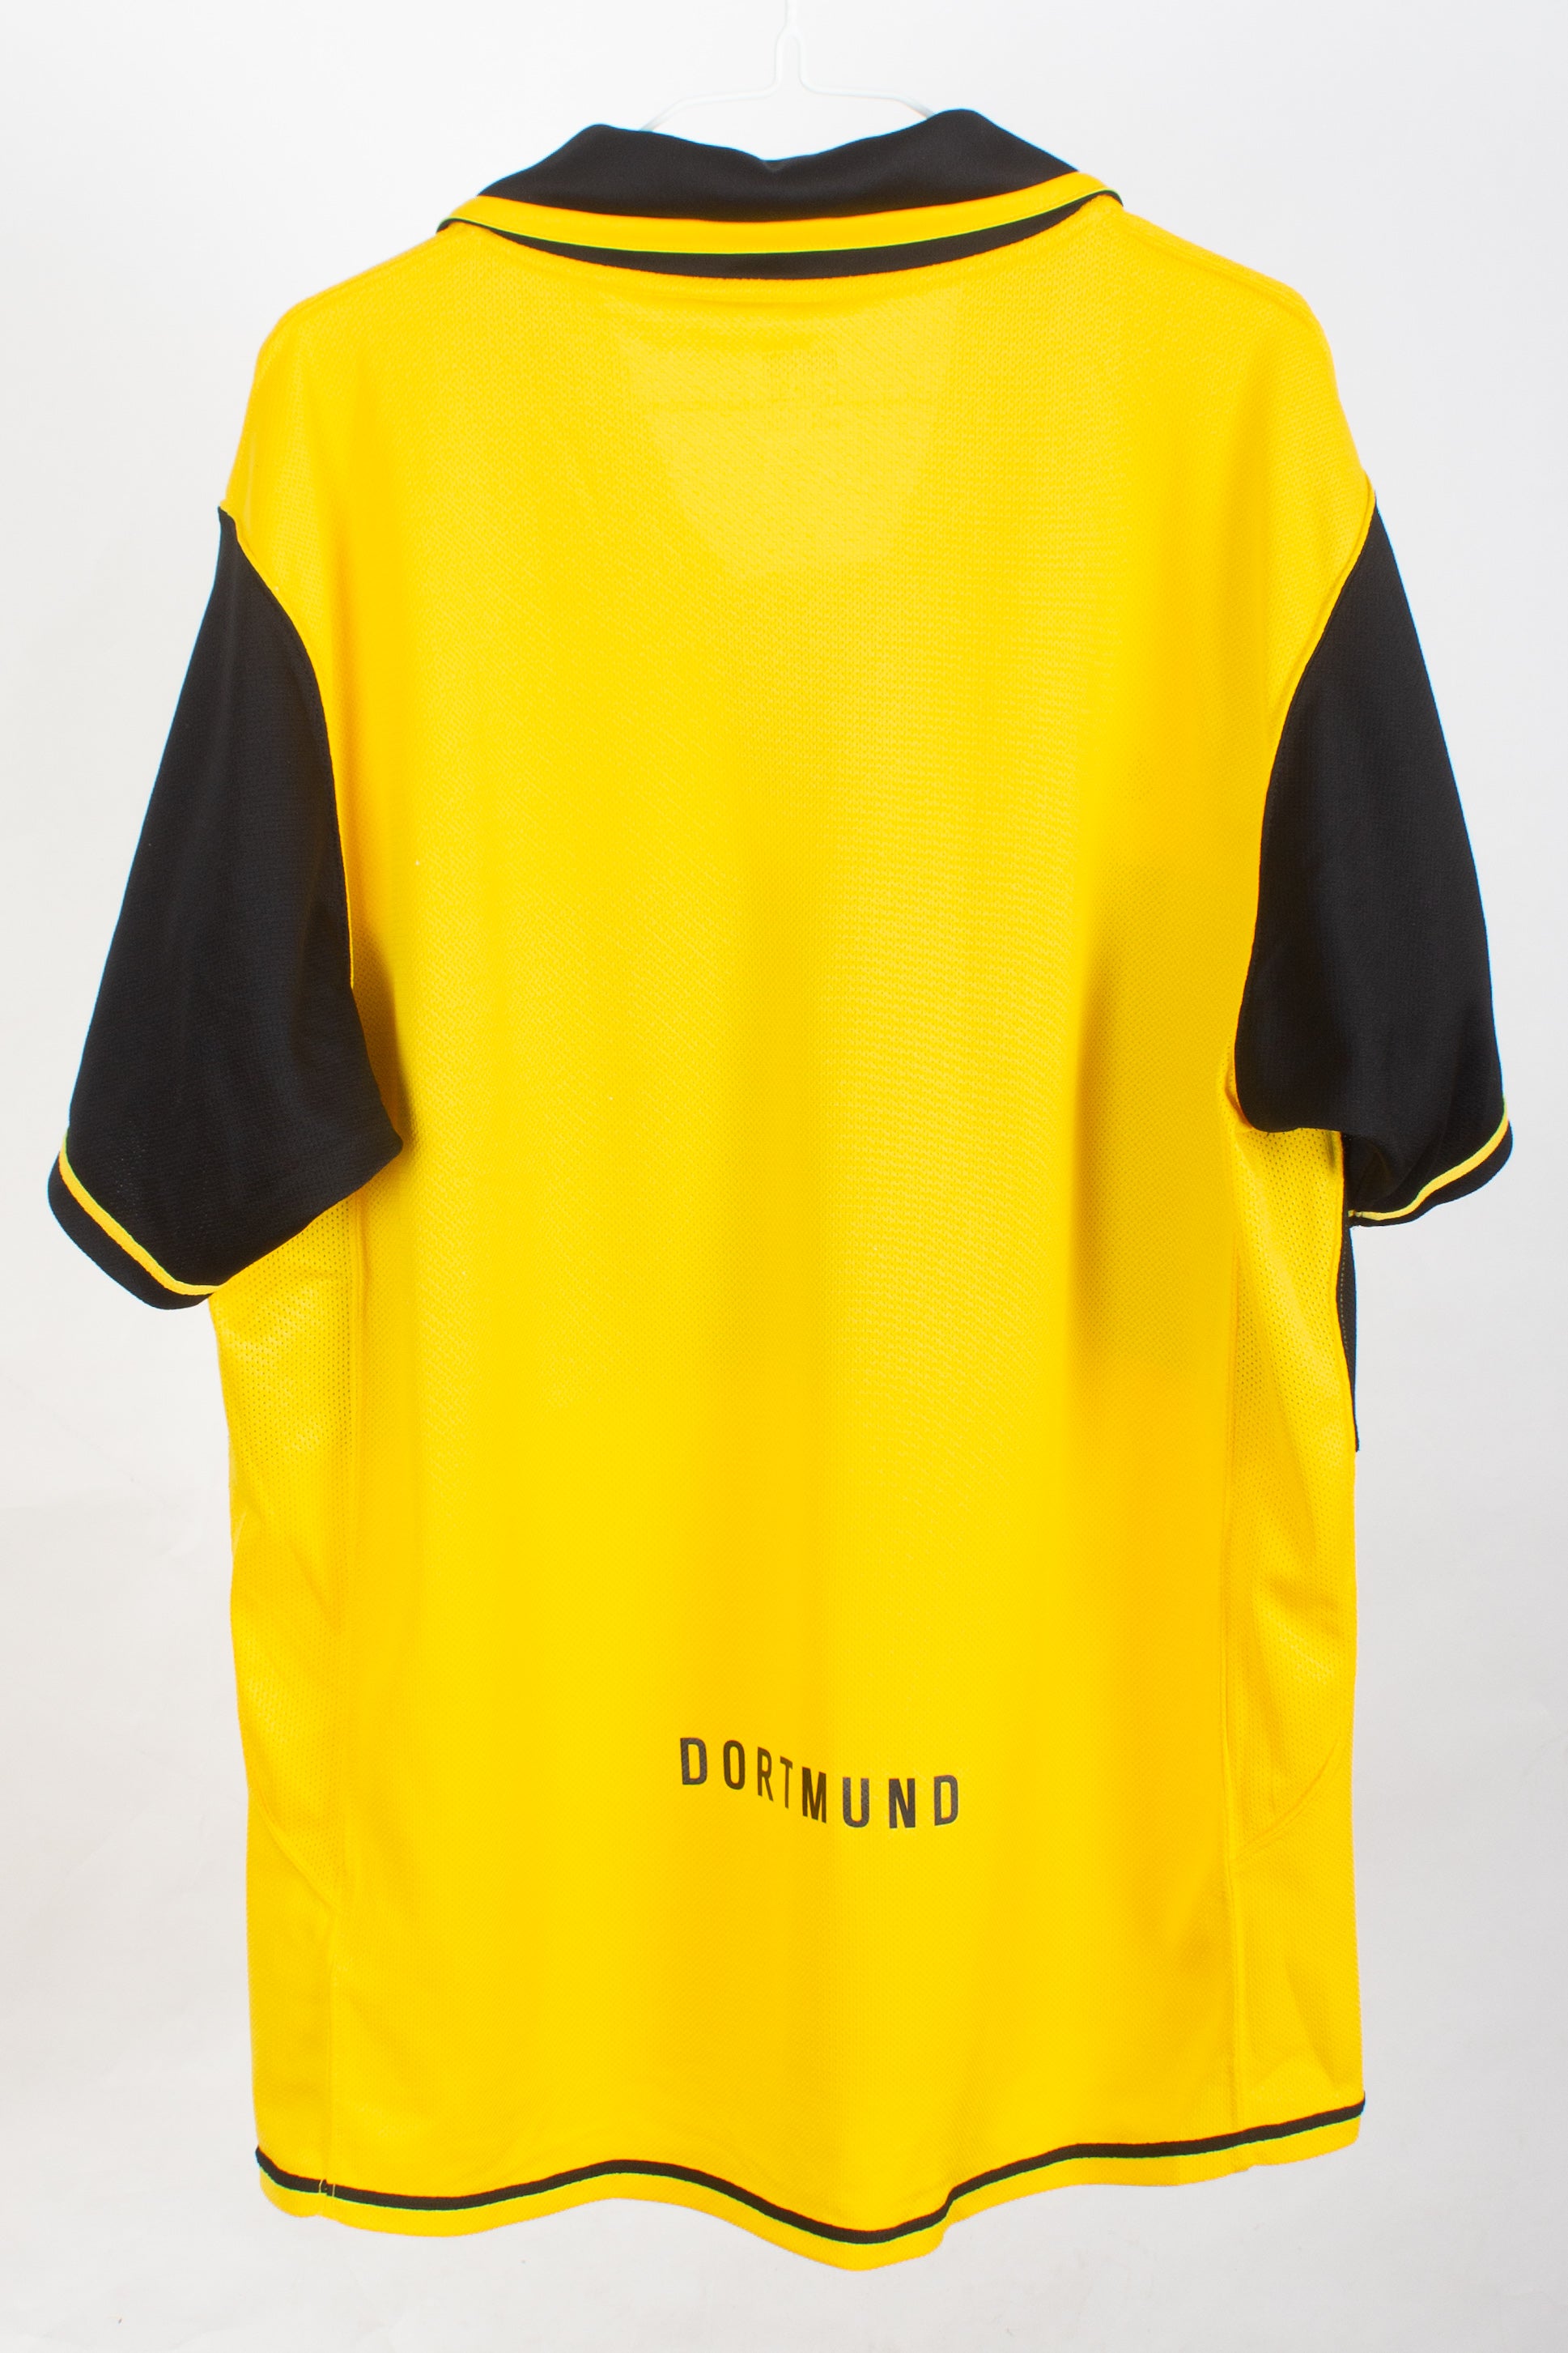 Borussia Dortmund 2007/08 Home Shirt (L)